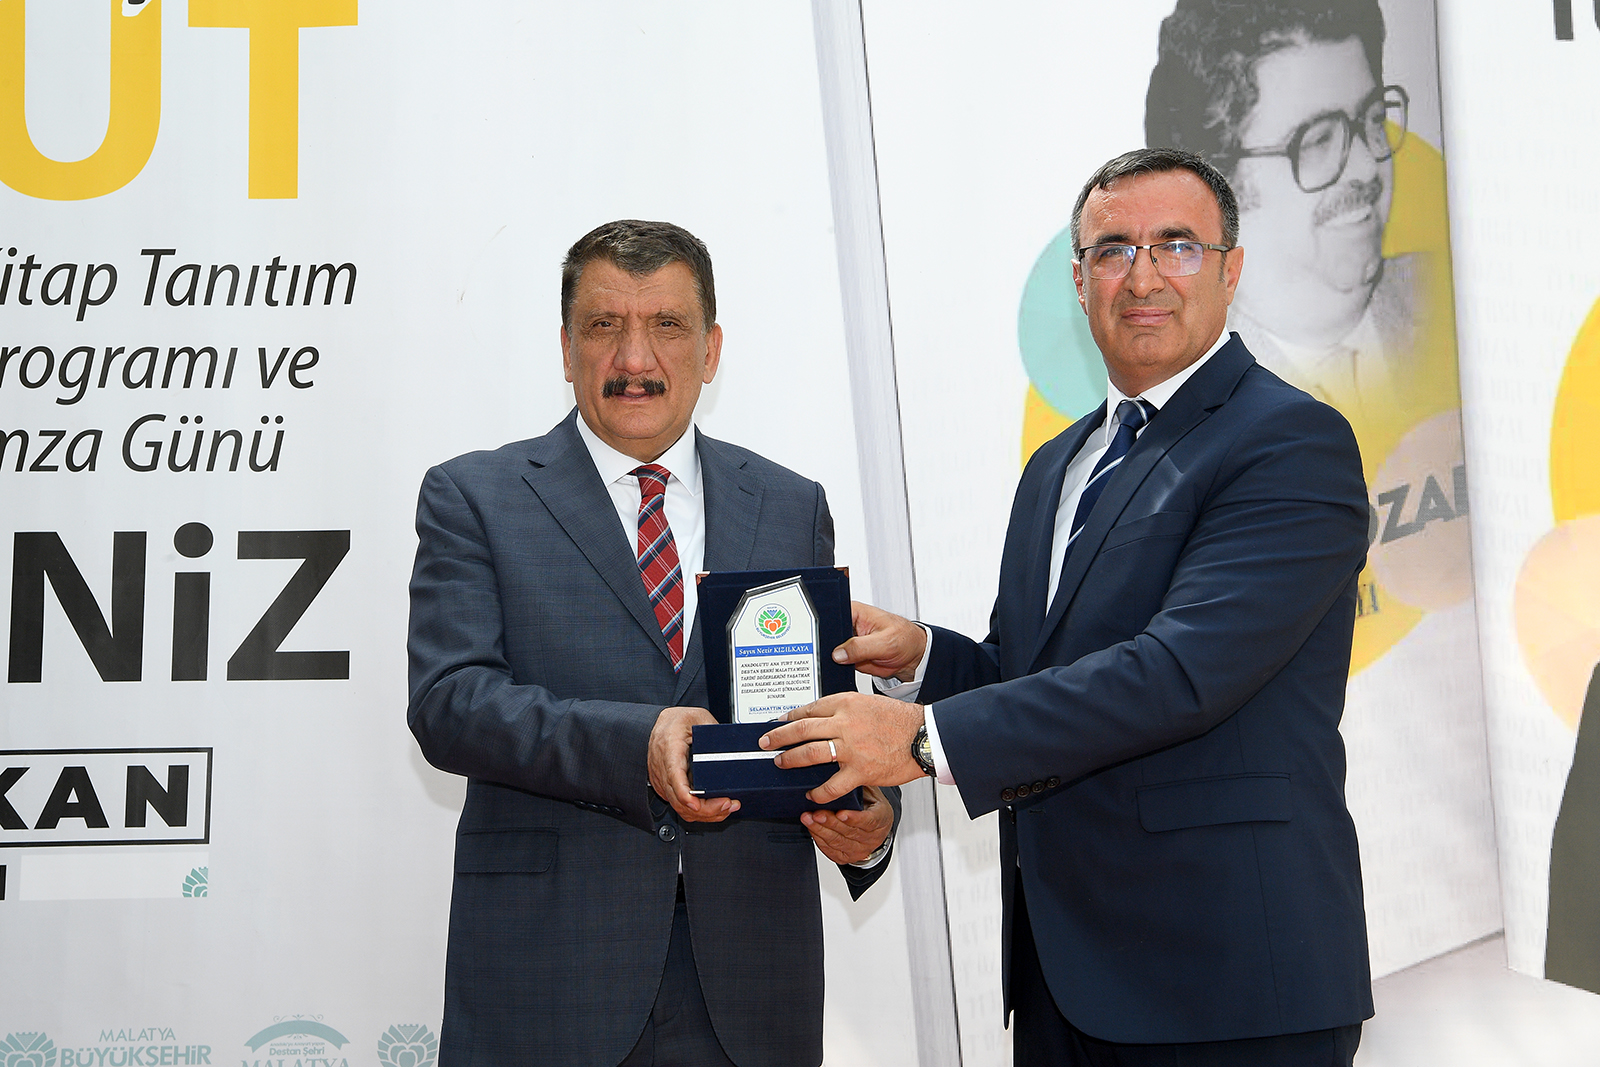 Malatya Büyükşehir Belediyesi Kültür ve Sosyal İşler Dairesi tarafından basımı gerçekleştirilen, Malatyalı Araştırmacı Yazar Nezir Kızılkaya’nın ‘Gençler için Turgut Özal’ kitabının tanıtımı ve imza töreni gerçekleştirildi.